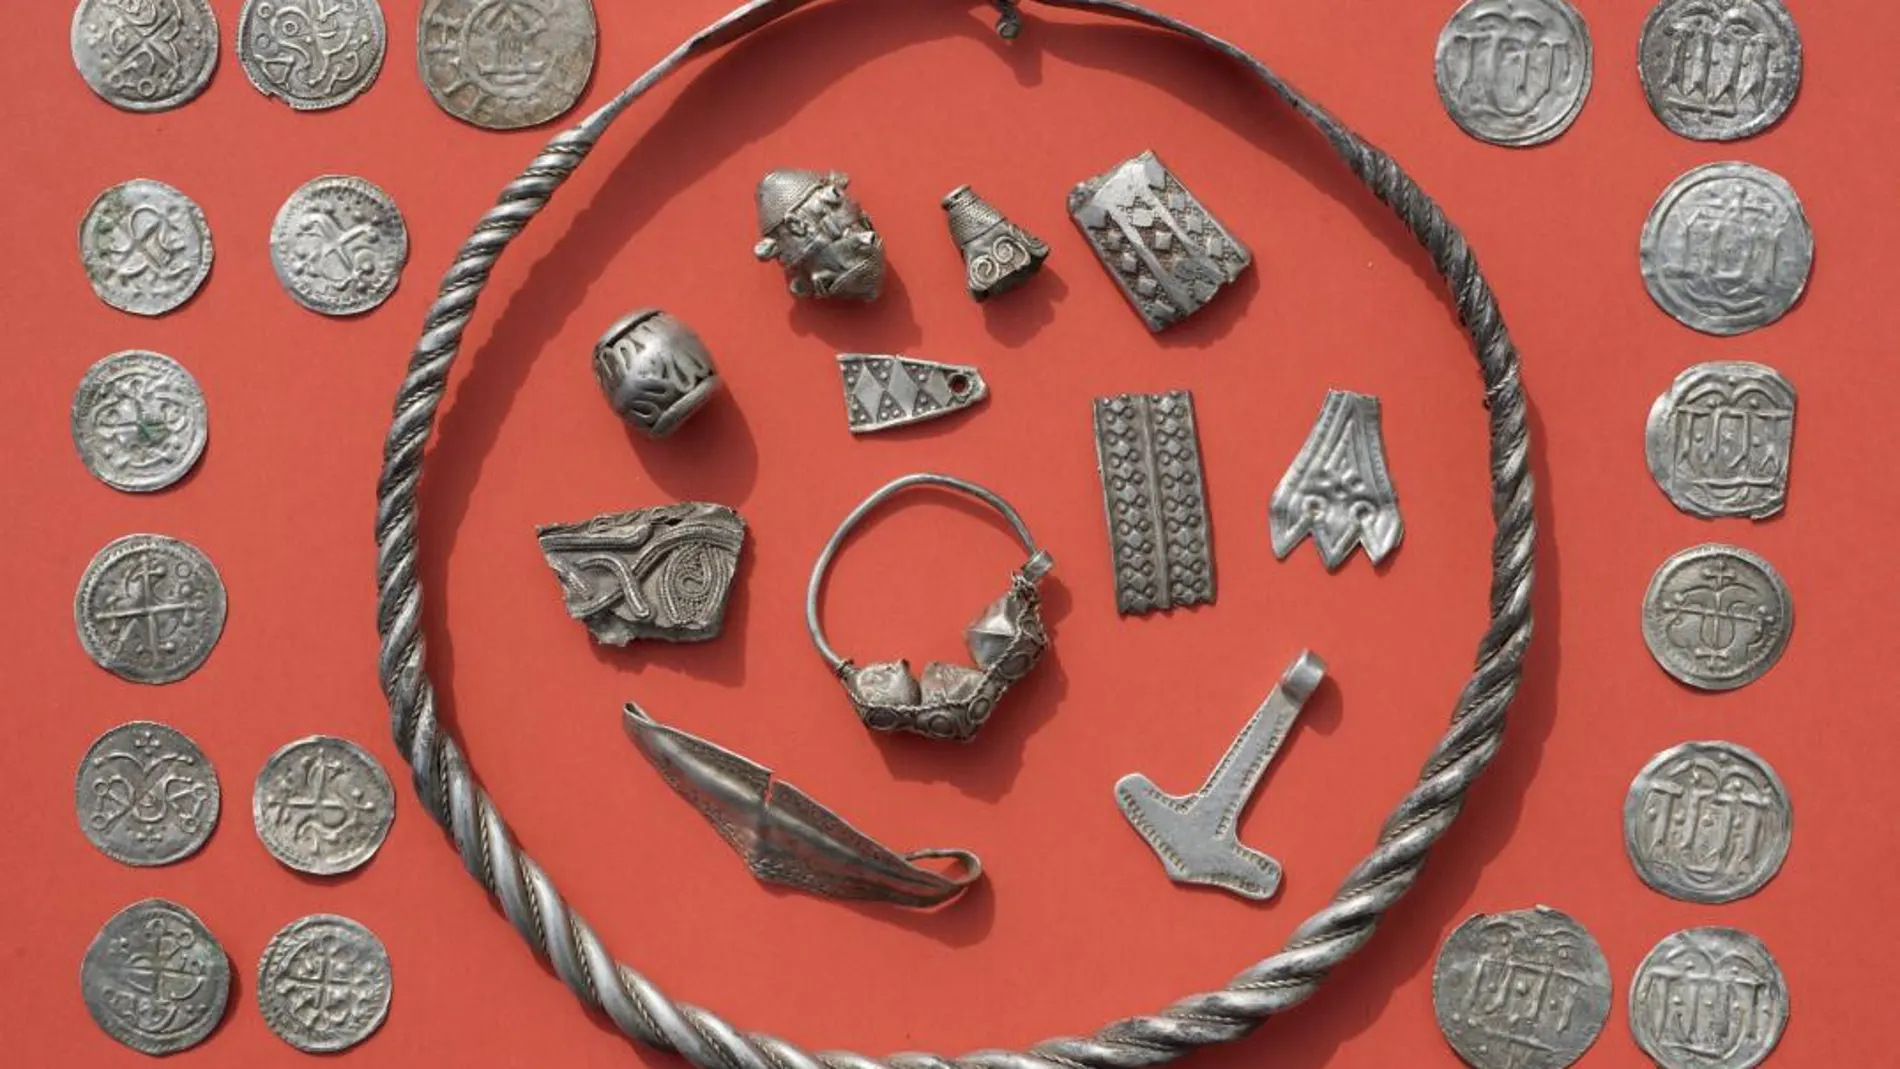 Joyas y monedas medievales del Rey Harald Bluetooth